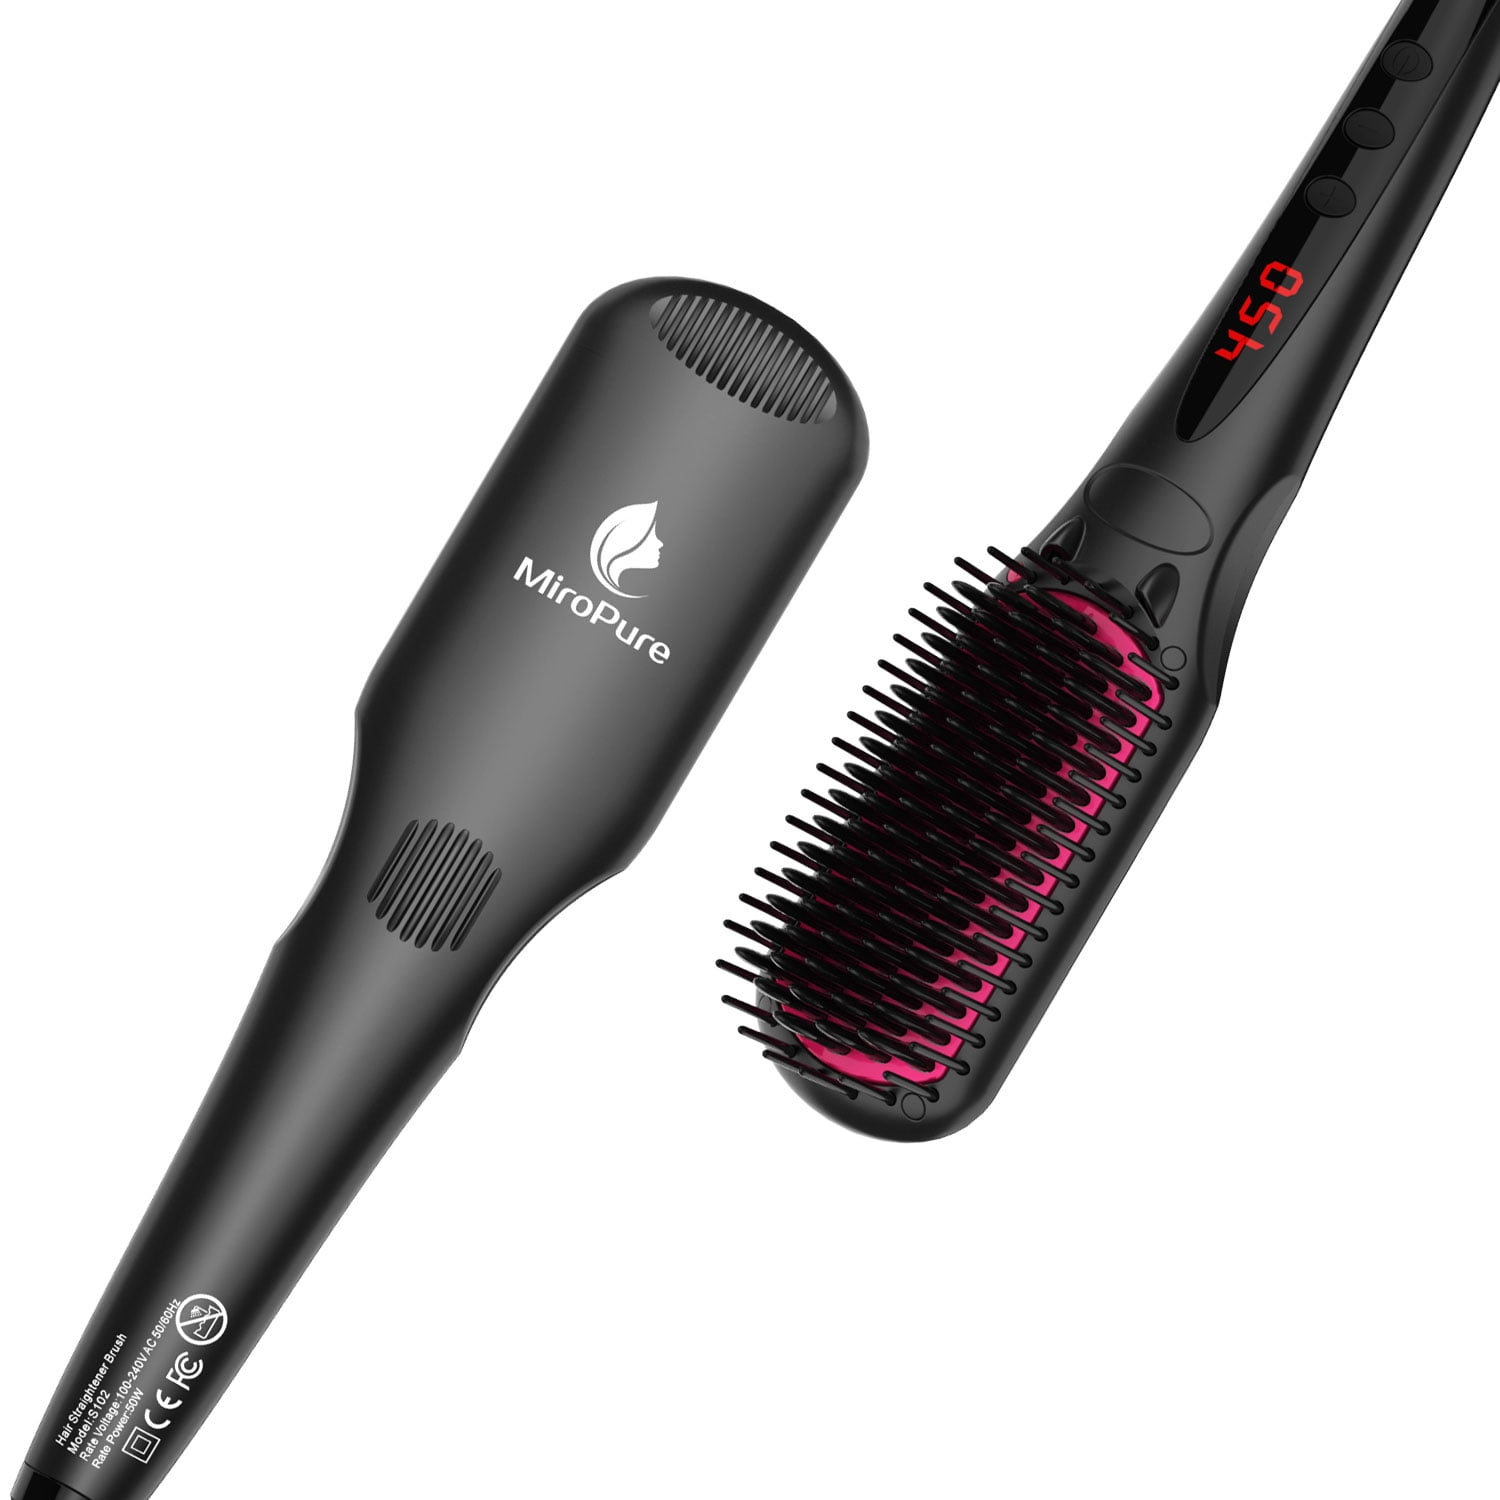 MiroPure S102 MCH Heating Dual Ionic Straightener Heat Brush Hair Tool -  